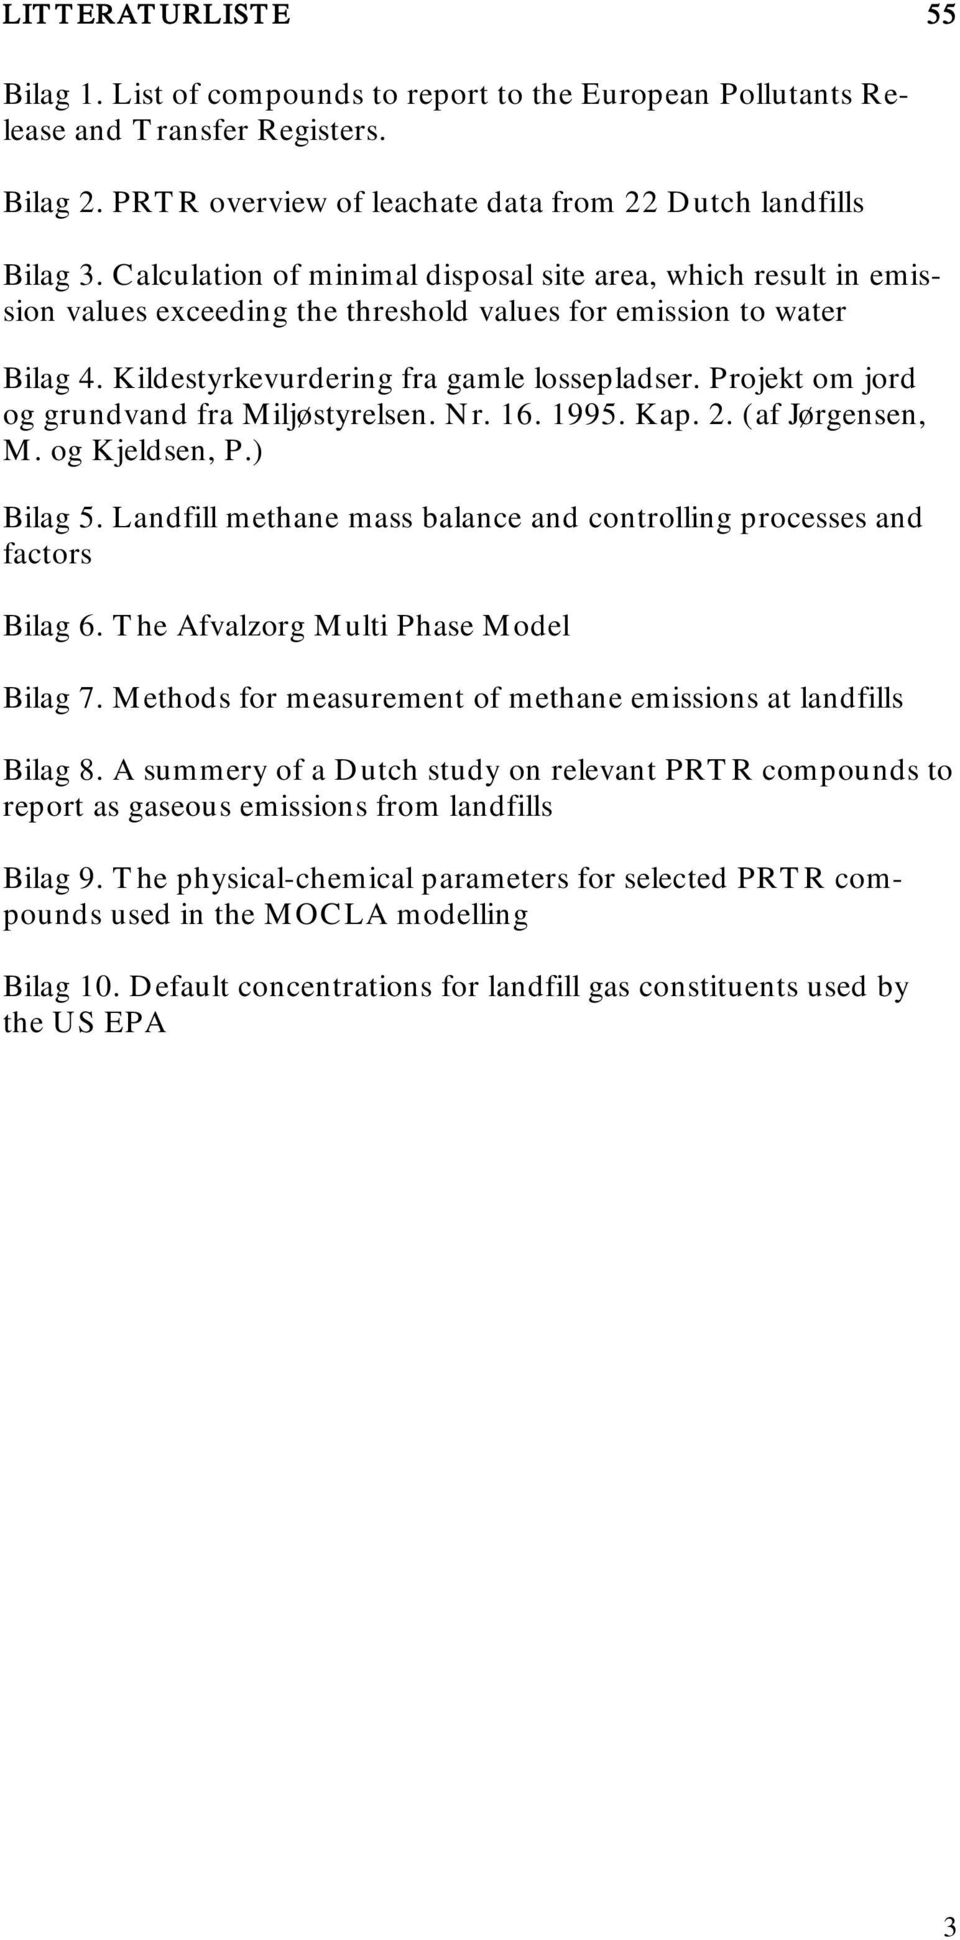 Projekt om jord og grundvand fra Miljøstyrelsen. Nr. 16. 1995. Kap. 2. (af Jørgensen, M. og Kjeldsen, P.) Bilag 5. Landfill methane mass balance and controlling processes and factors Bilag 6.